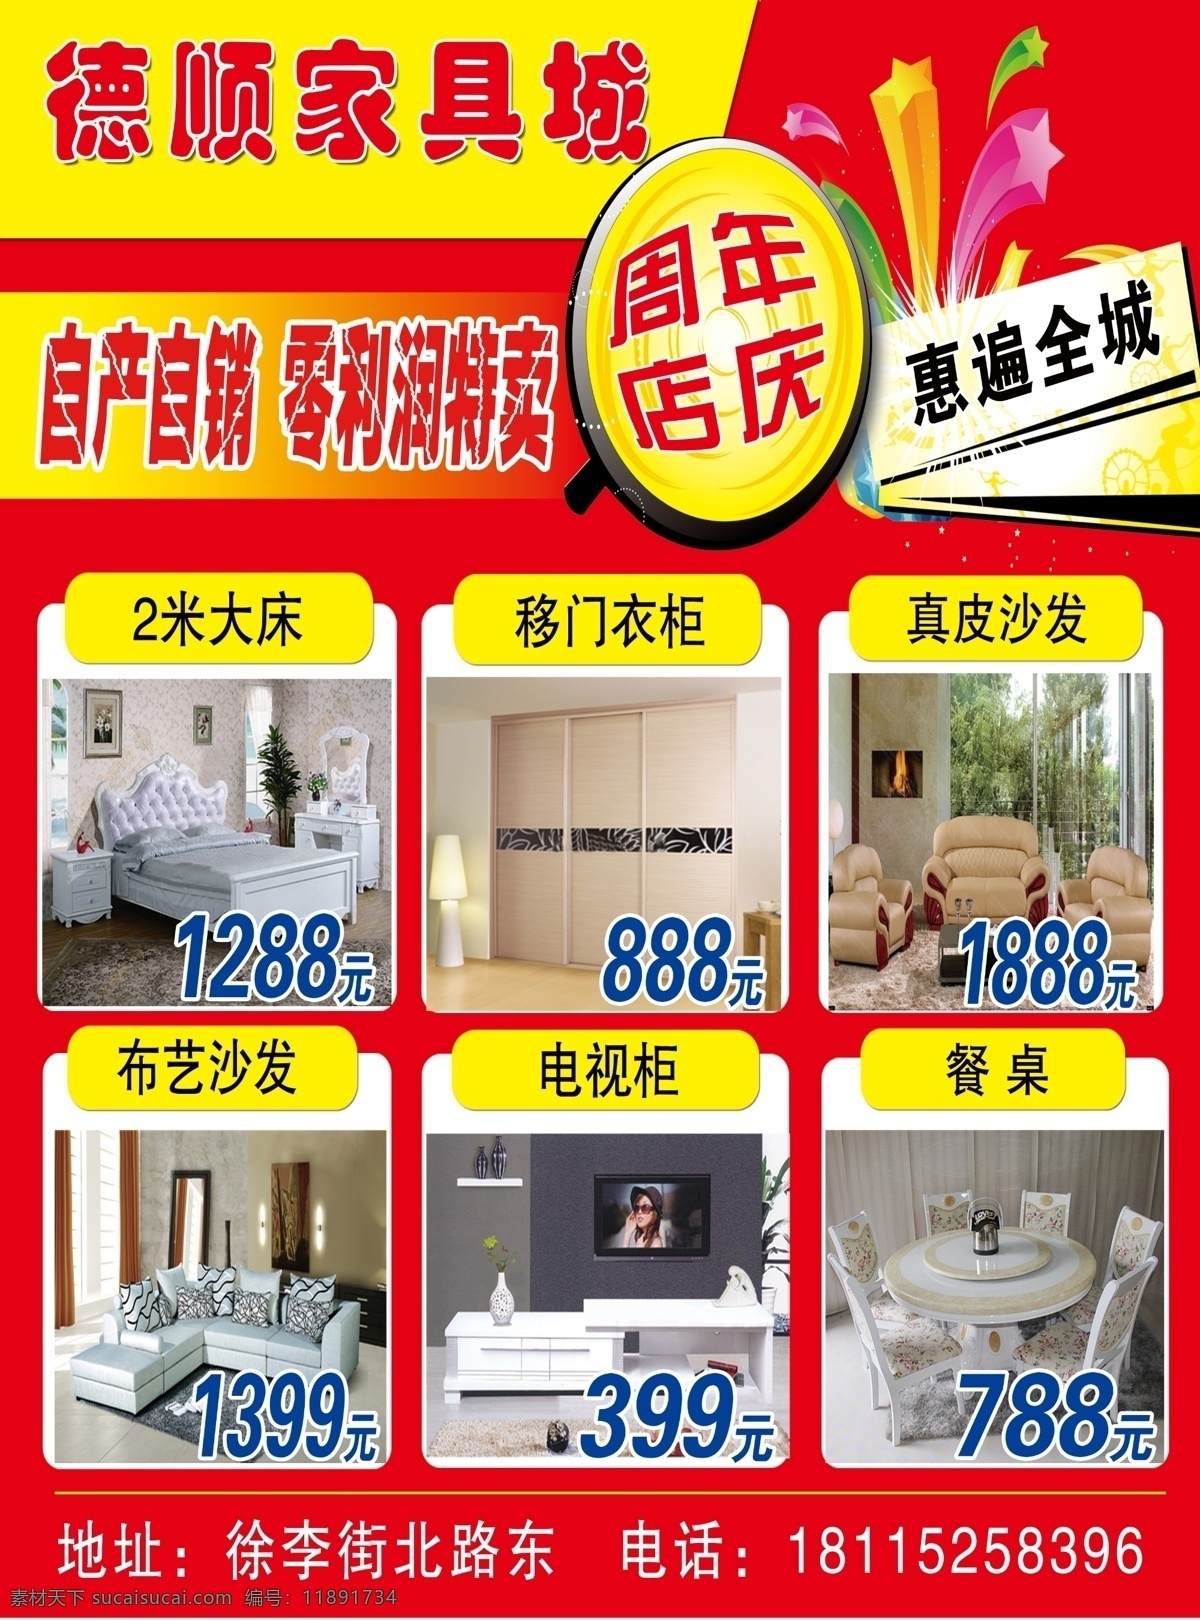 家具城海报 宣传单 周年店庆 彩带 好看的背景 沙发 床 组合